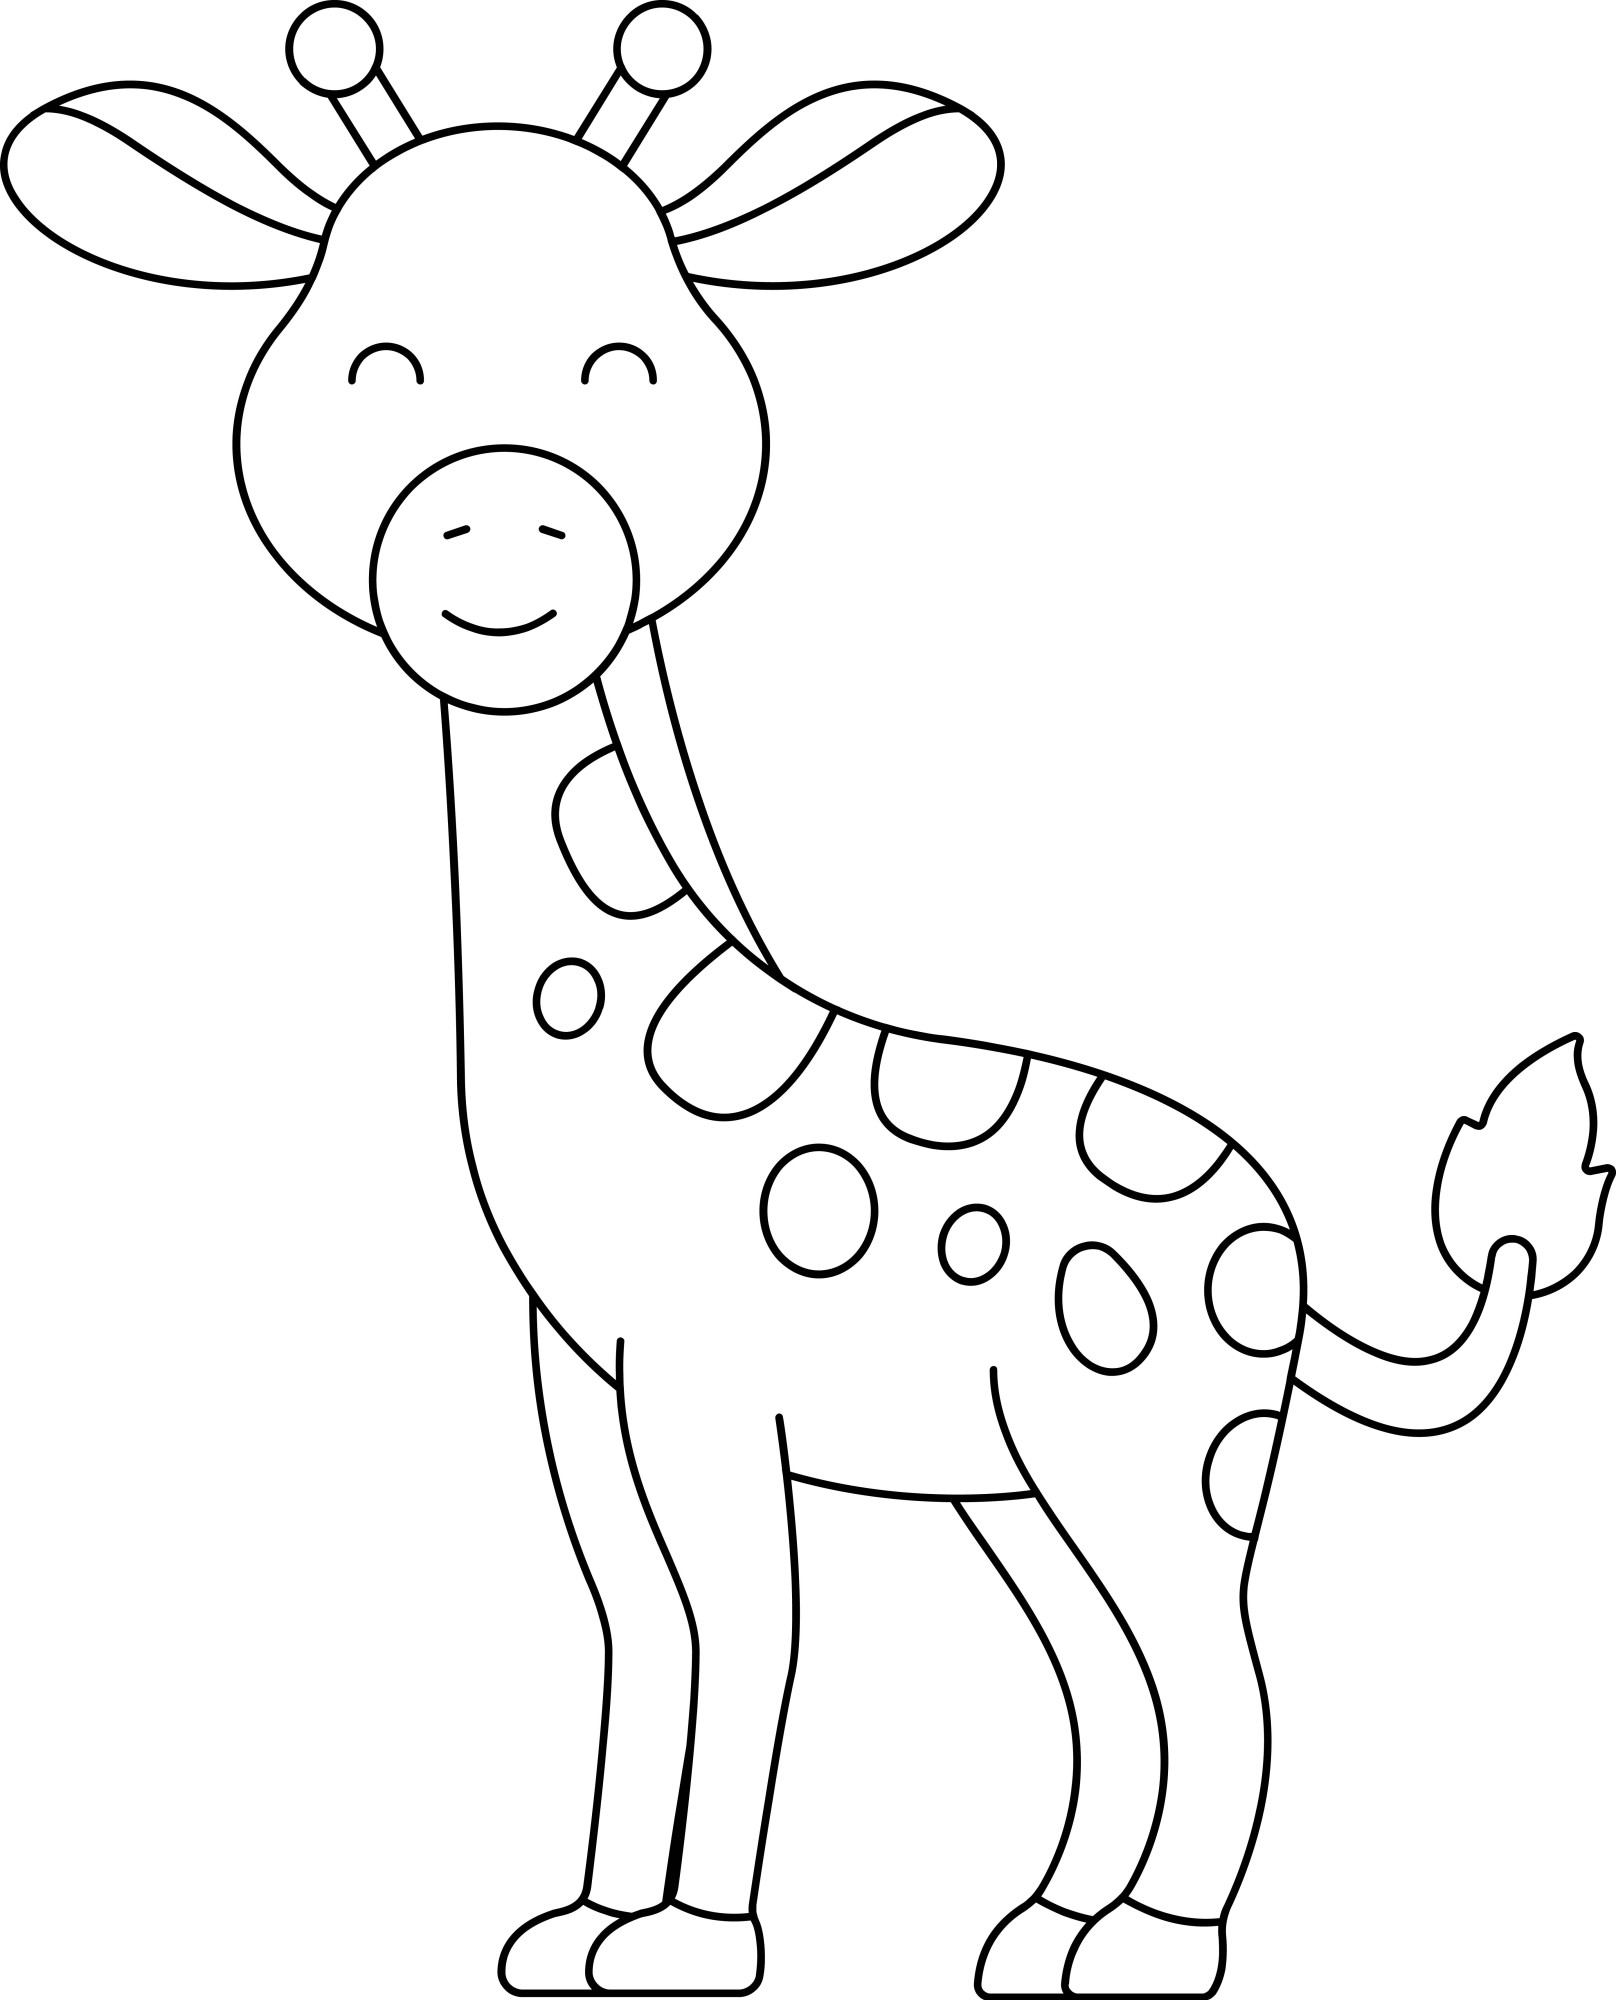 Раскраска для детей: маленький жираф с закрытыми глазами